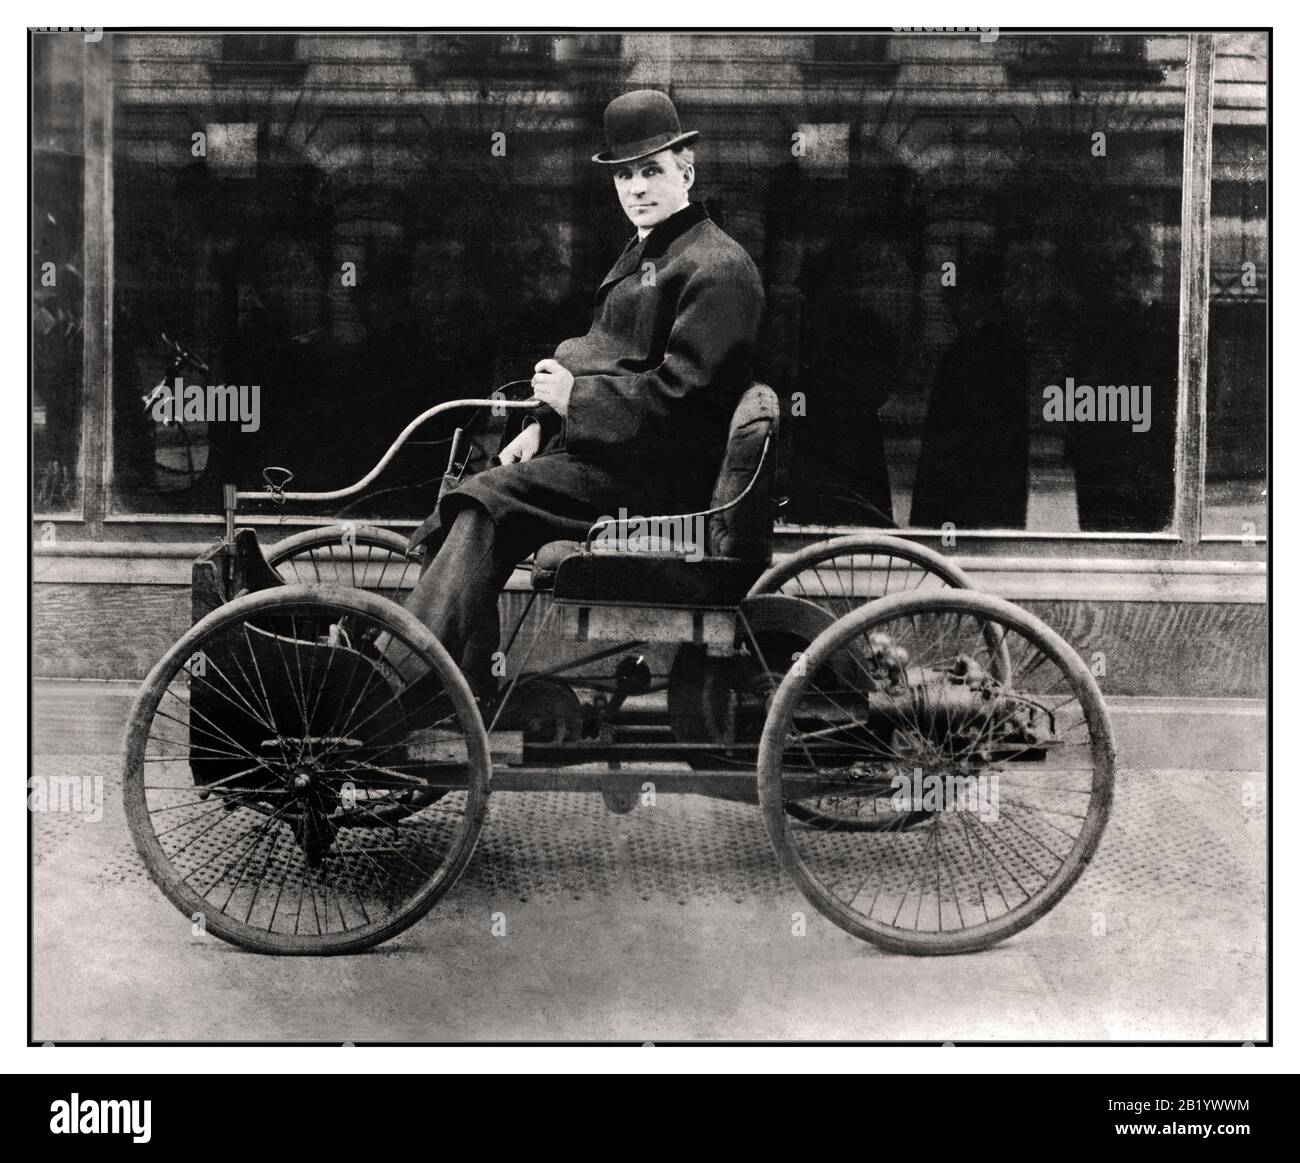 Henry Ford Quadriciclo archivio vintage 1890's seduto e posando su un Ford Quadriciclo il primo veicolo sviluppato da Ford, un inventore visionario e esperto. Questa prima vettura è stata un telaio semplice con un motore a gas e quattro ruote di bicicletta montate su di esso le prime auto sono state costruite a mano, una ad una, e molto costoso. Le macchine particolari sono state viste come giocattoli per i ricchi Nel 1890s, il 'carro senza ferro' era un'idea relativamente nuova. Foto Stock